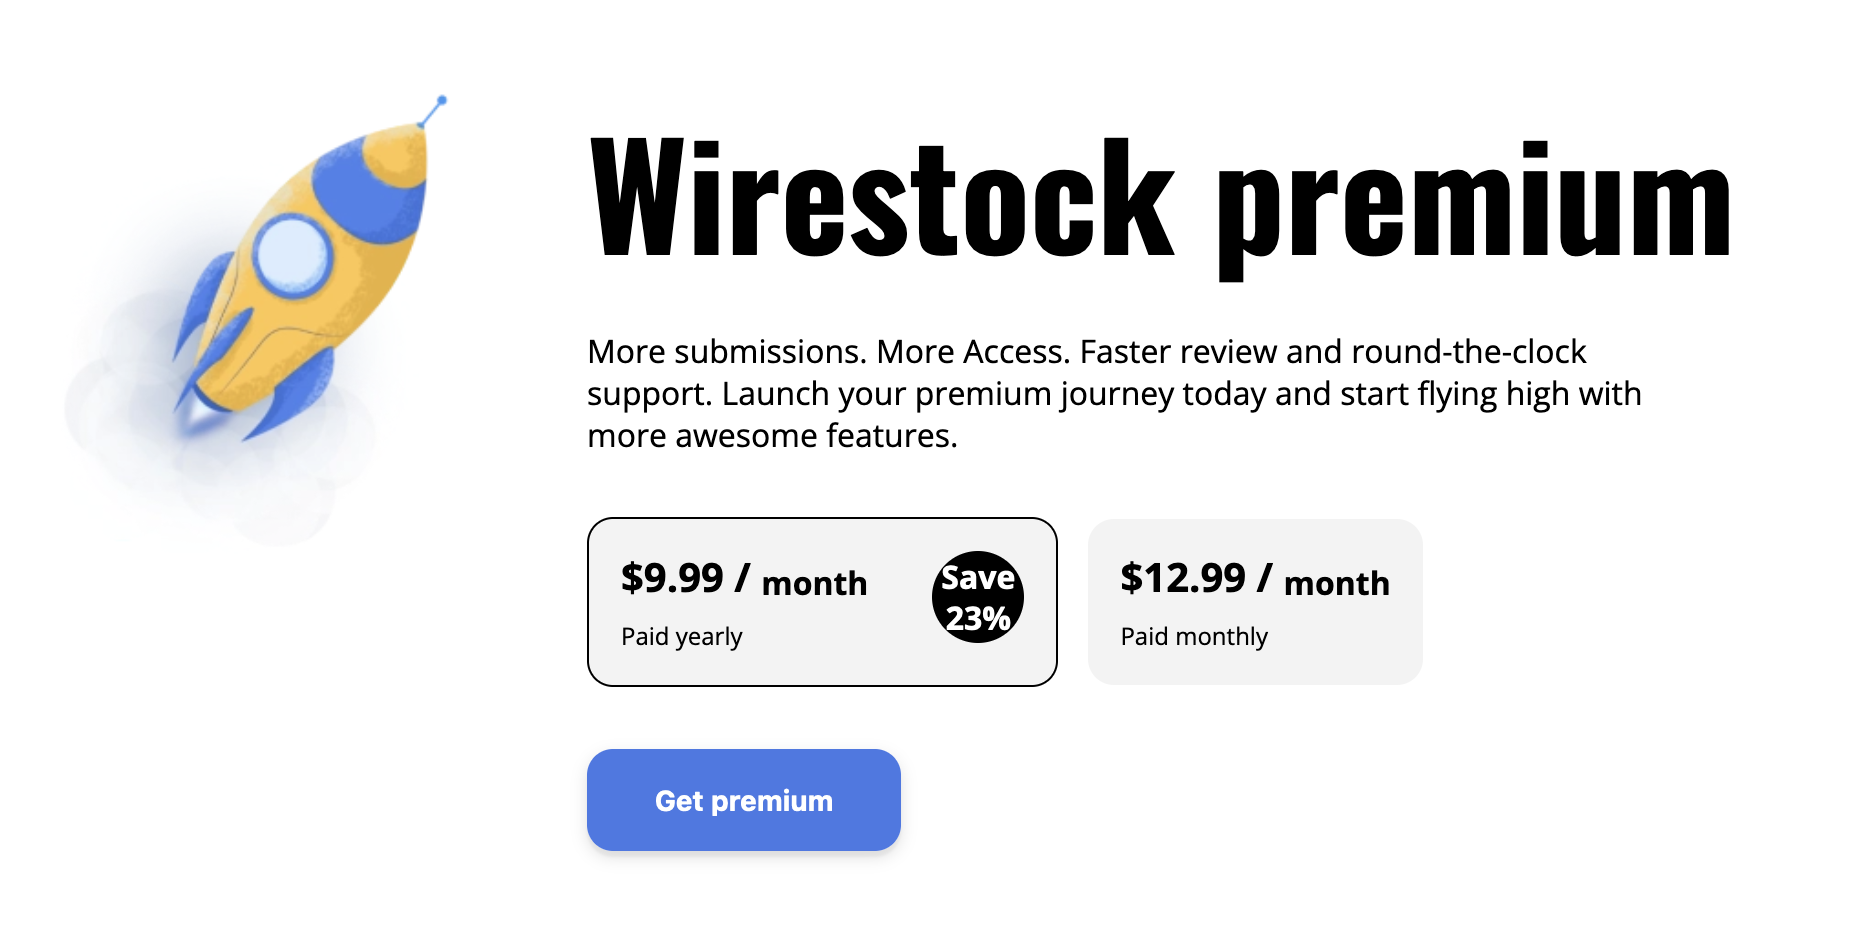 Wirestock Premium